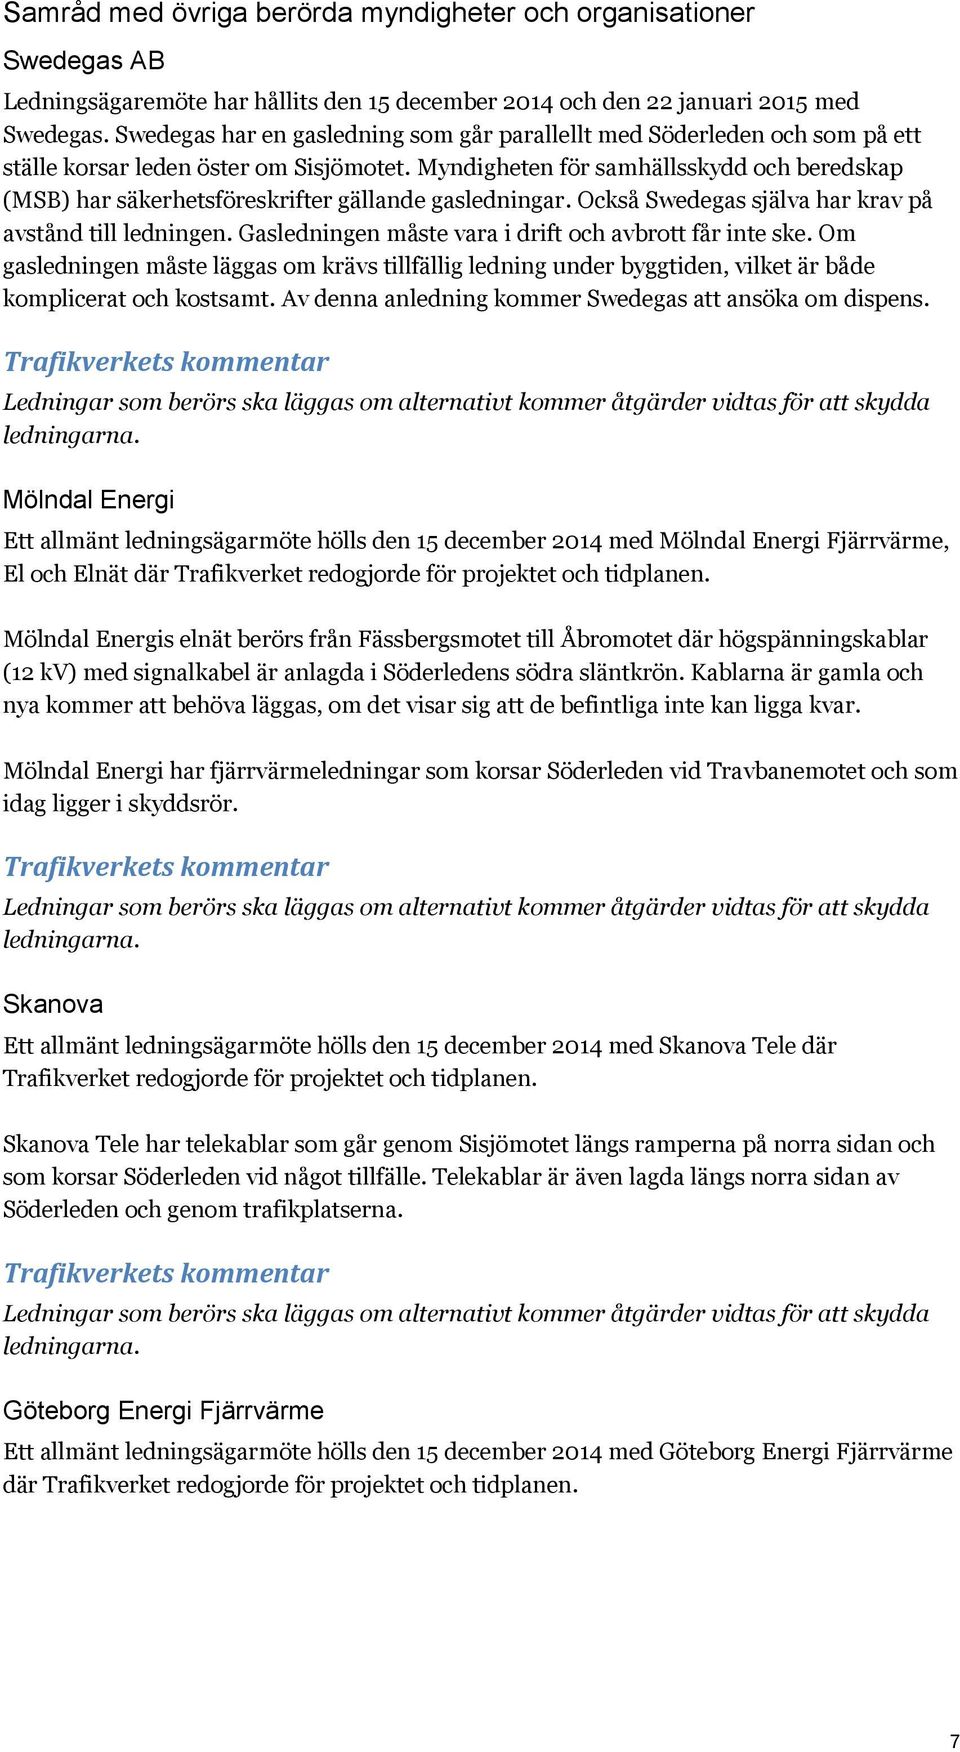 Myndigheten för samhällsskydd och beredskap (MSB) har säkerhetsföreskrifter gällande gasledningar. Också Swedegas själva har krav på avstånd till ledningen.